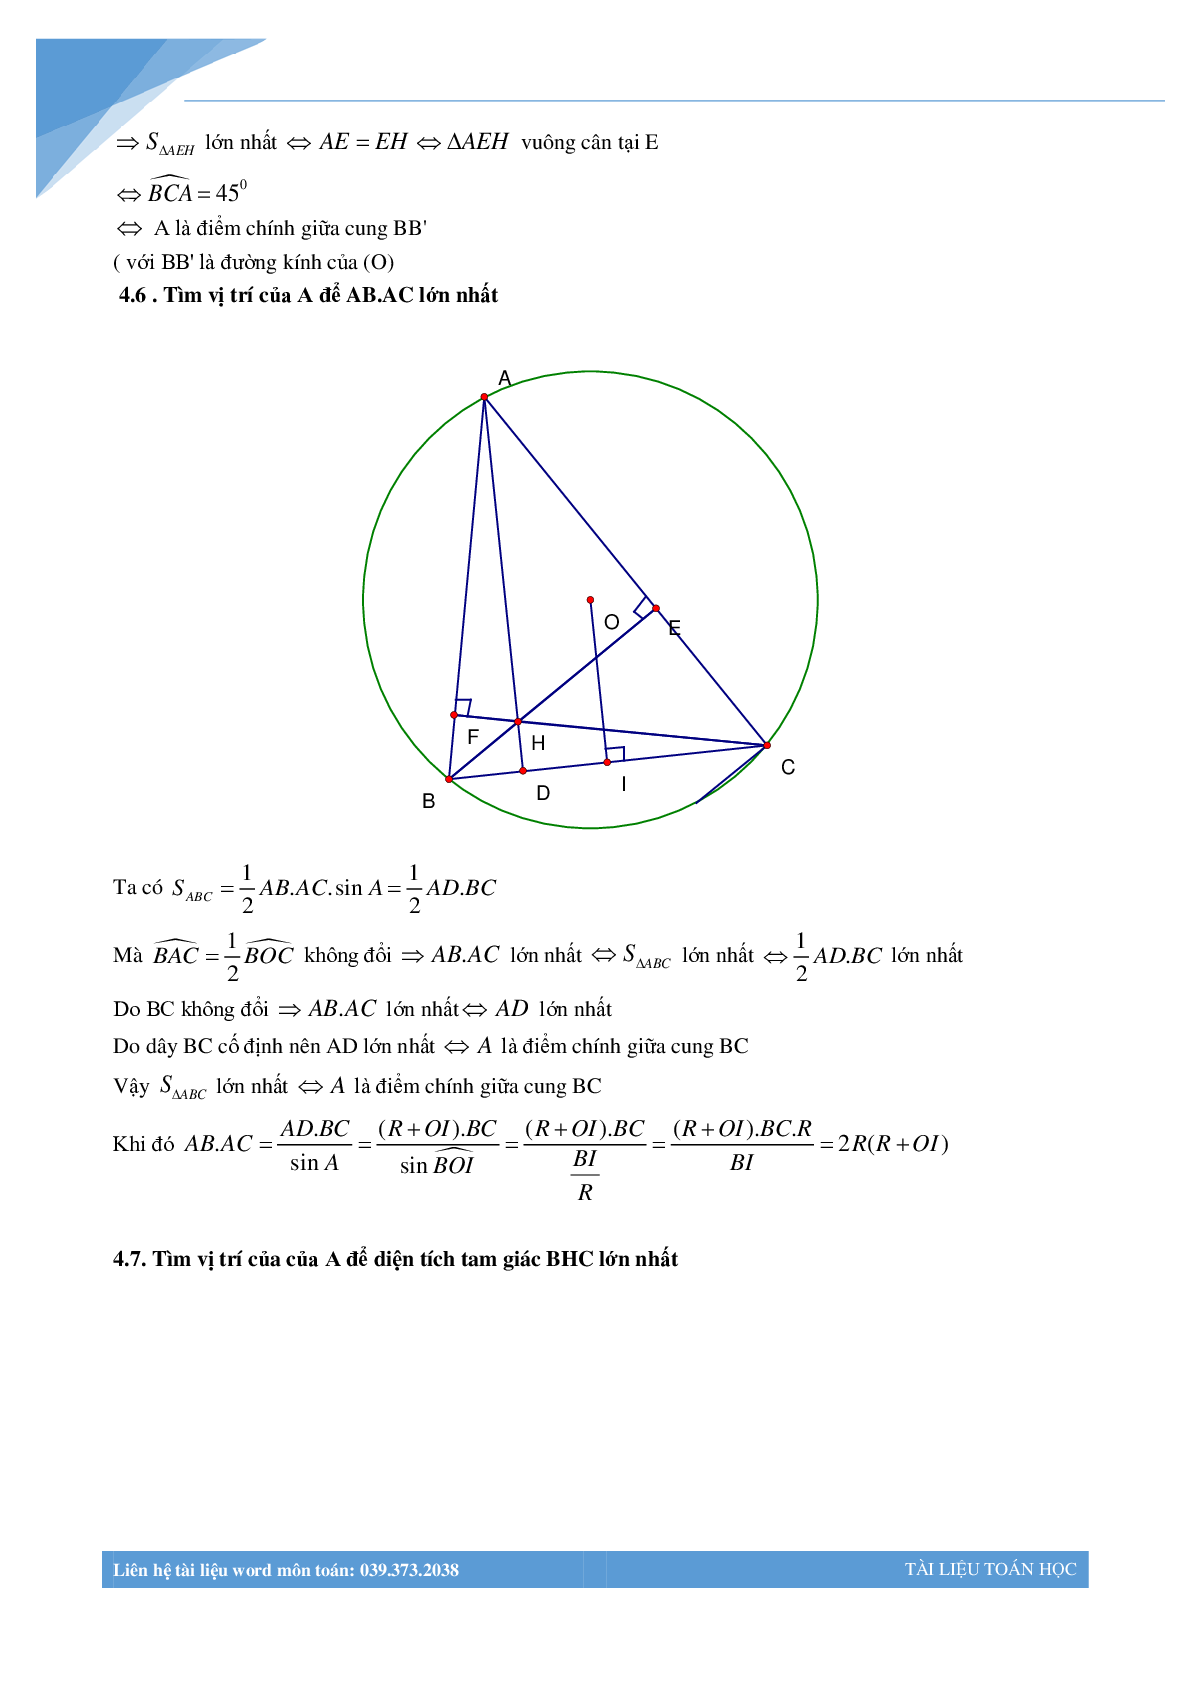 Chùm bài toán hình học luyện thi vào lớp 10 (trang 10)